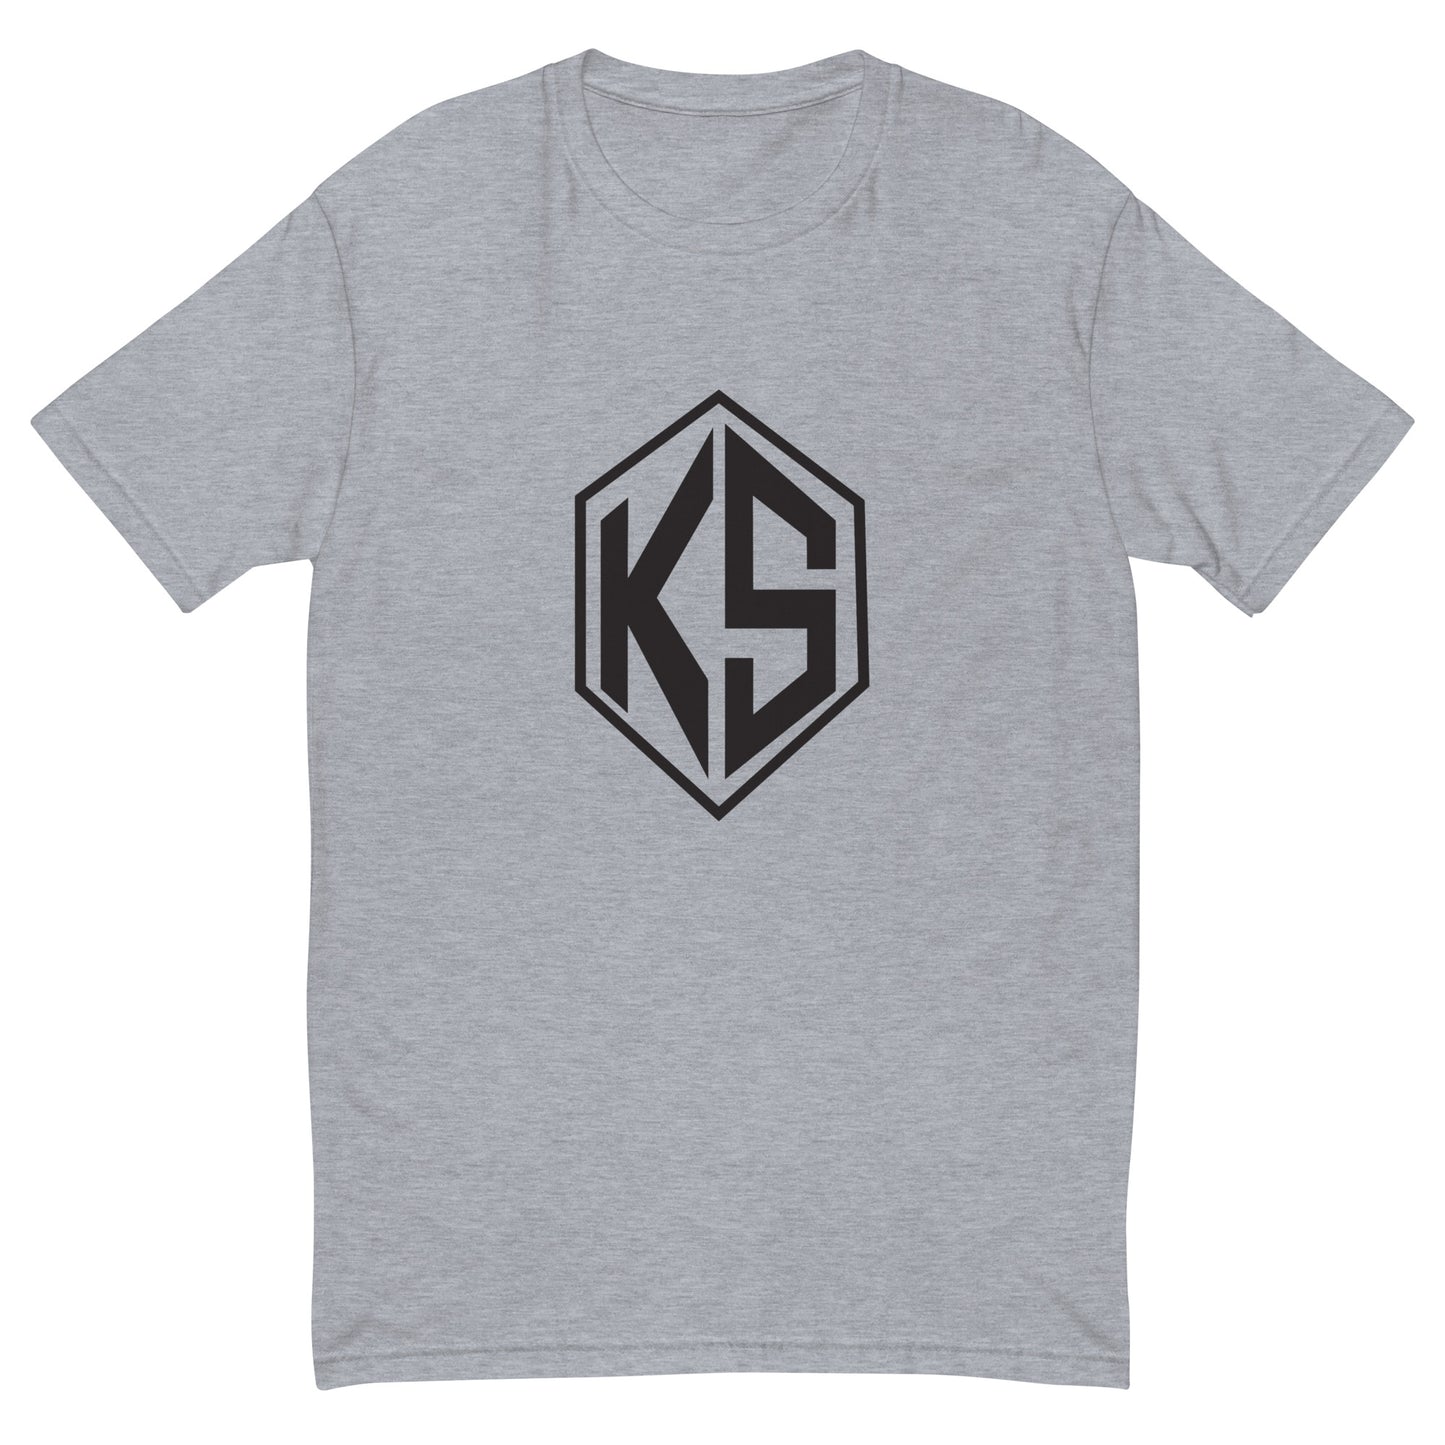 KS Short Sleeve T-shirt